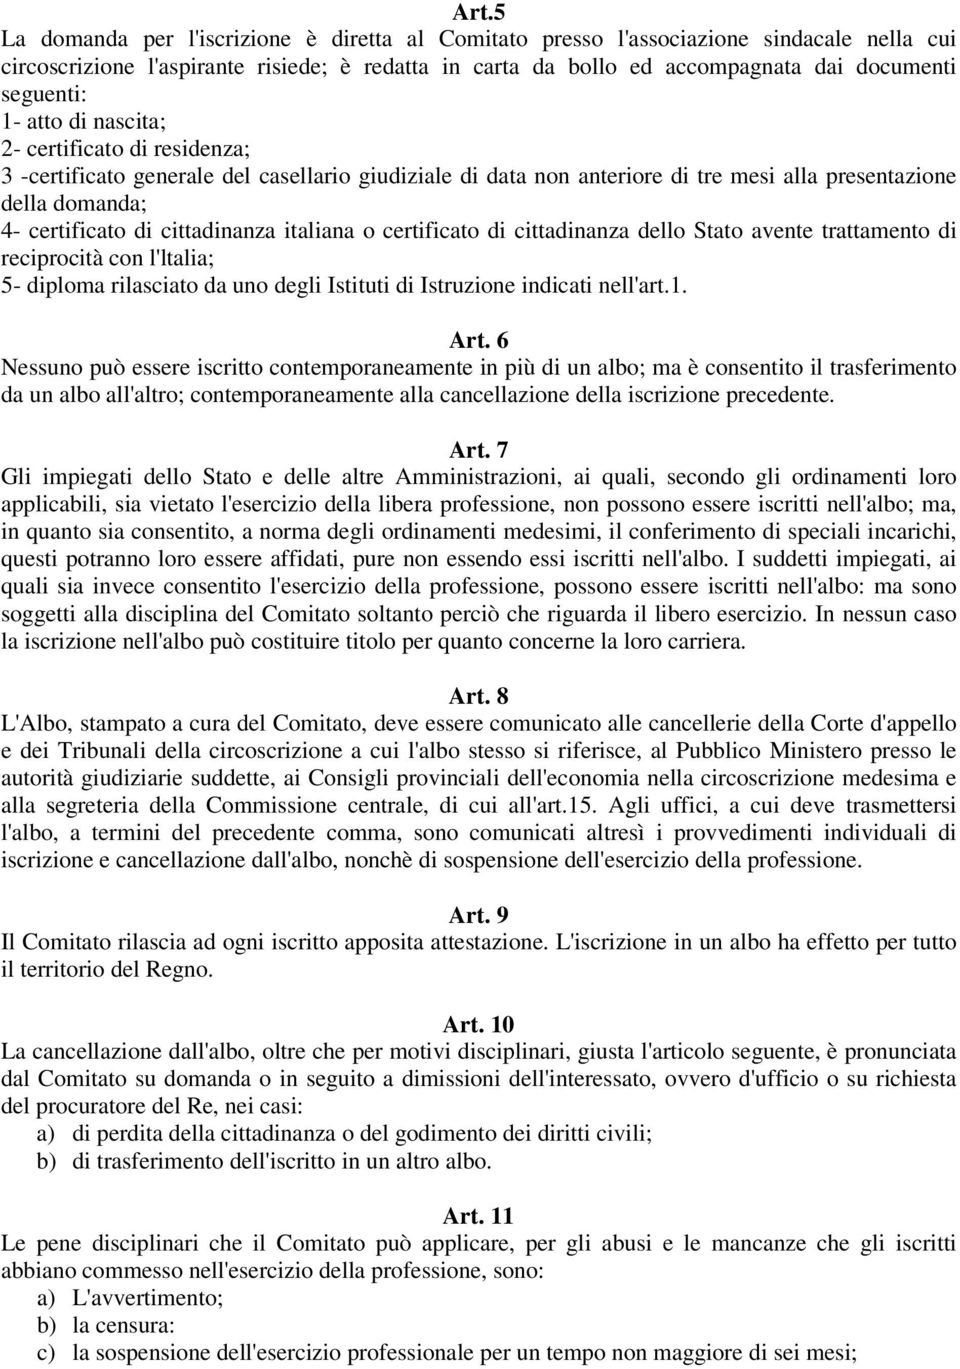 cittadinanza italiana o certificato di cittadinanza dello Stato avente trattamento di reciprocità con l'ltalia; 5- diploma rilasciato da uno degli Istituti di Istruzione indicati nell'art.1. Art.